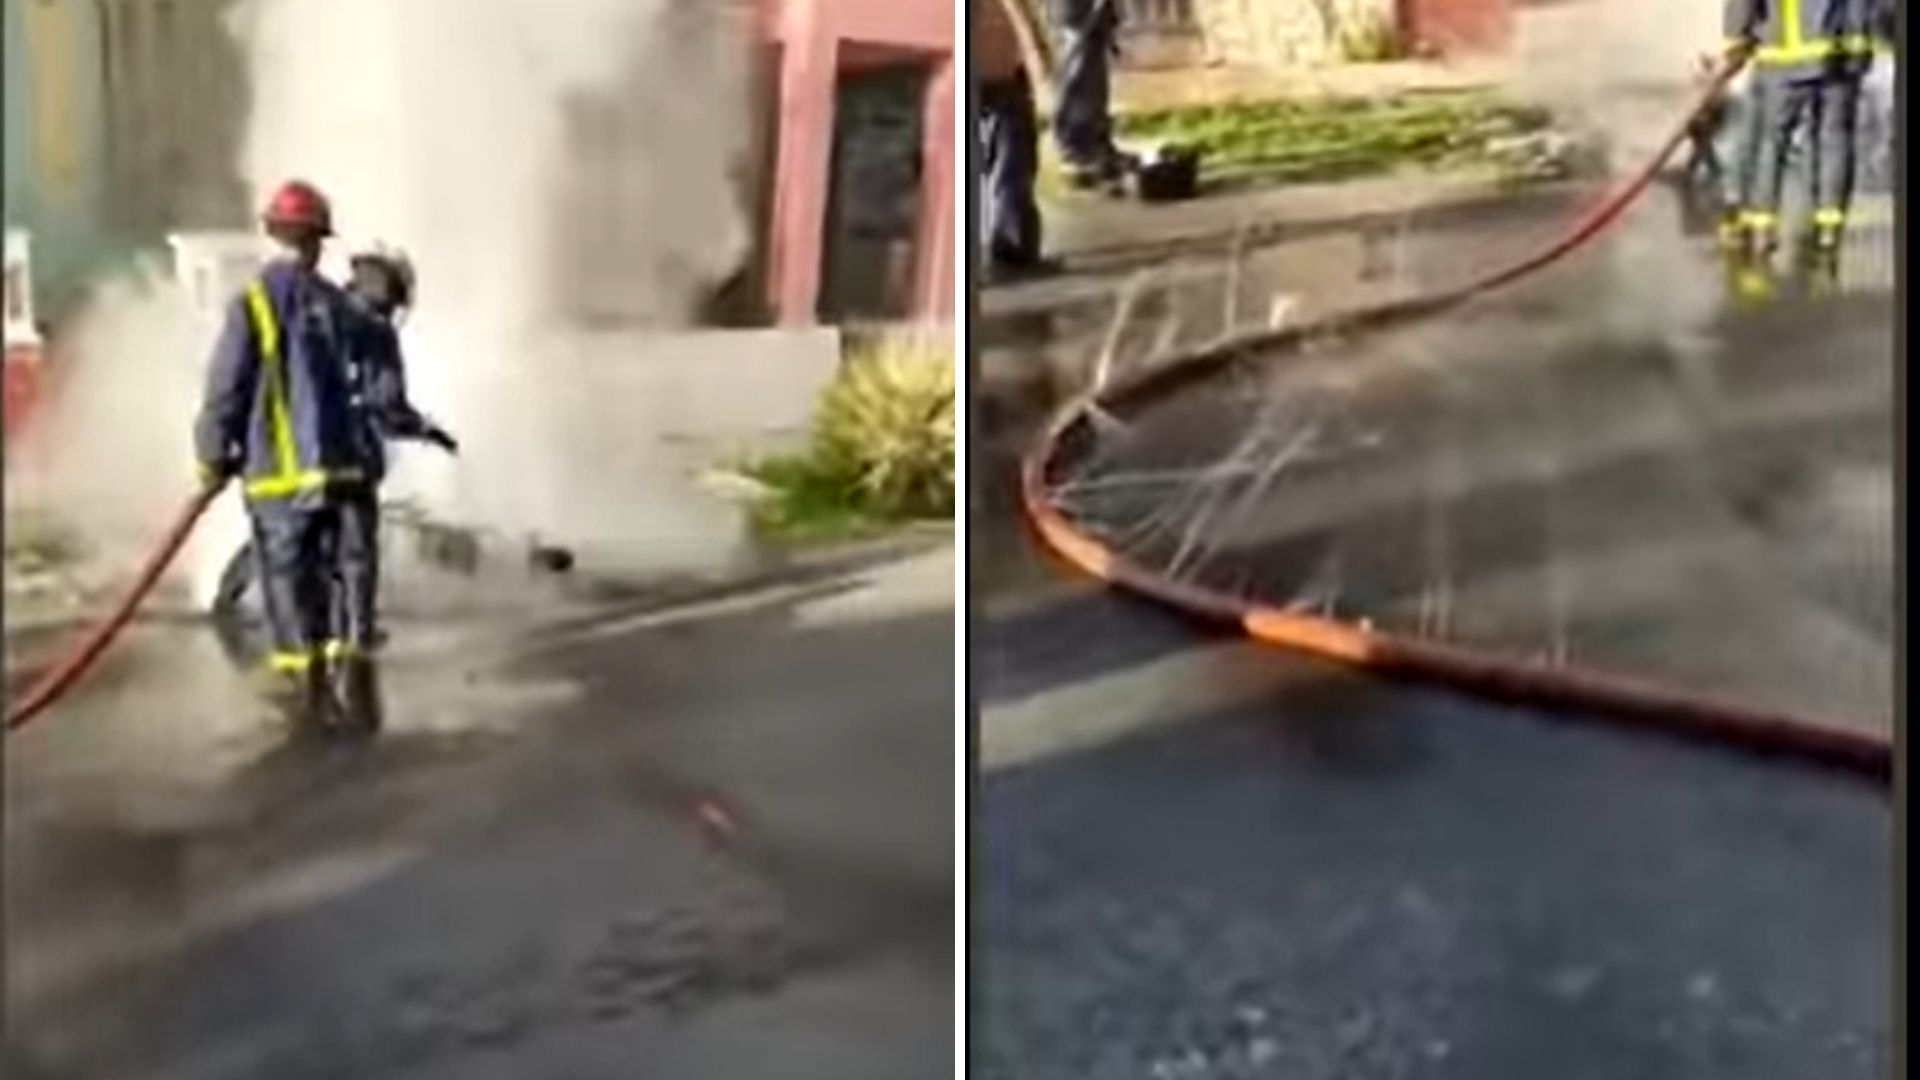 Las imágenes muestran a dos bomberos cubanos intentando apagar una moto eléctrica en llamas en la calle, pero la manguera que utilizan tiene agujeros, por donde se sale el agua